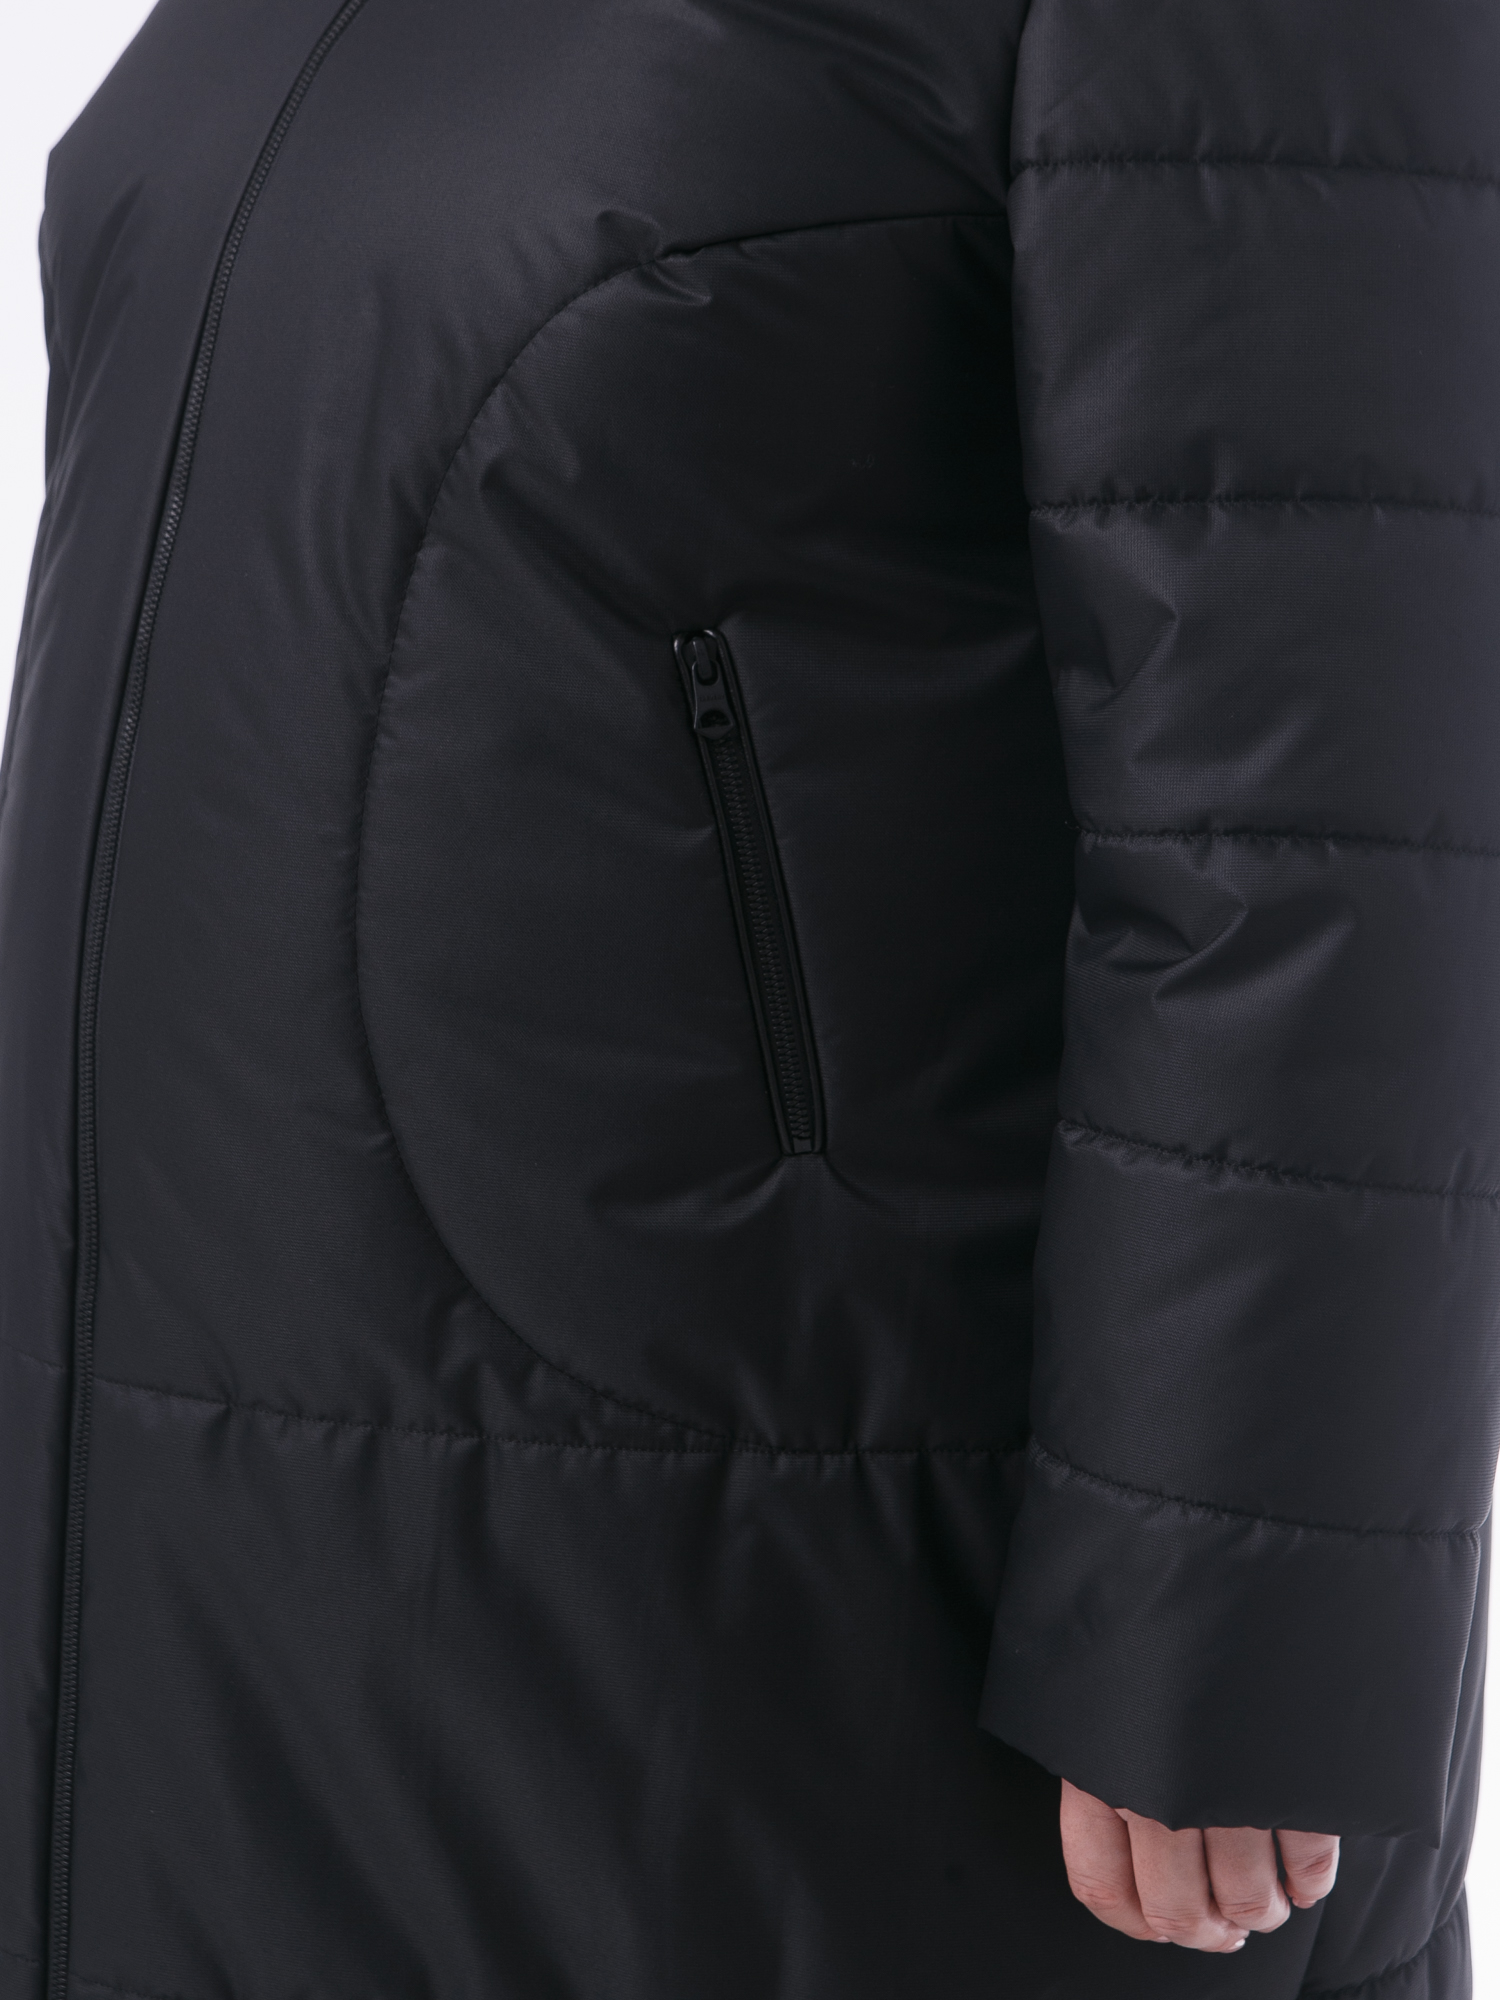 Молодежное пальто из двух видов стежки, цвет черный в интернет-магазине Фабрики Тревери